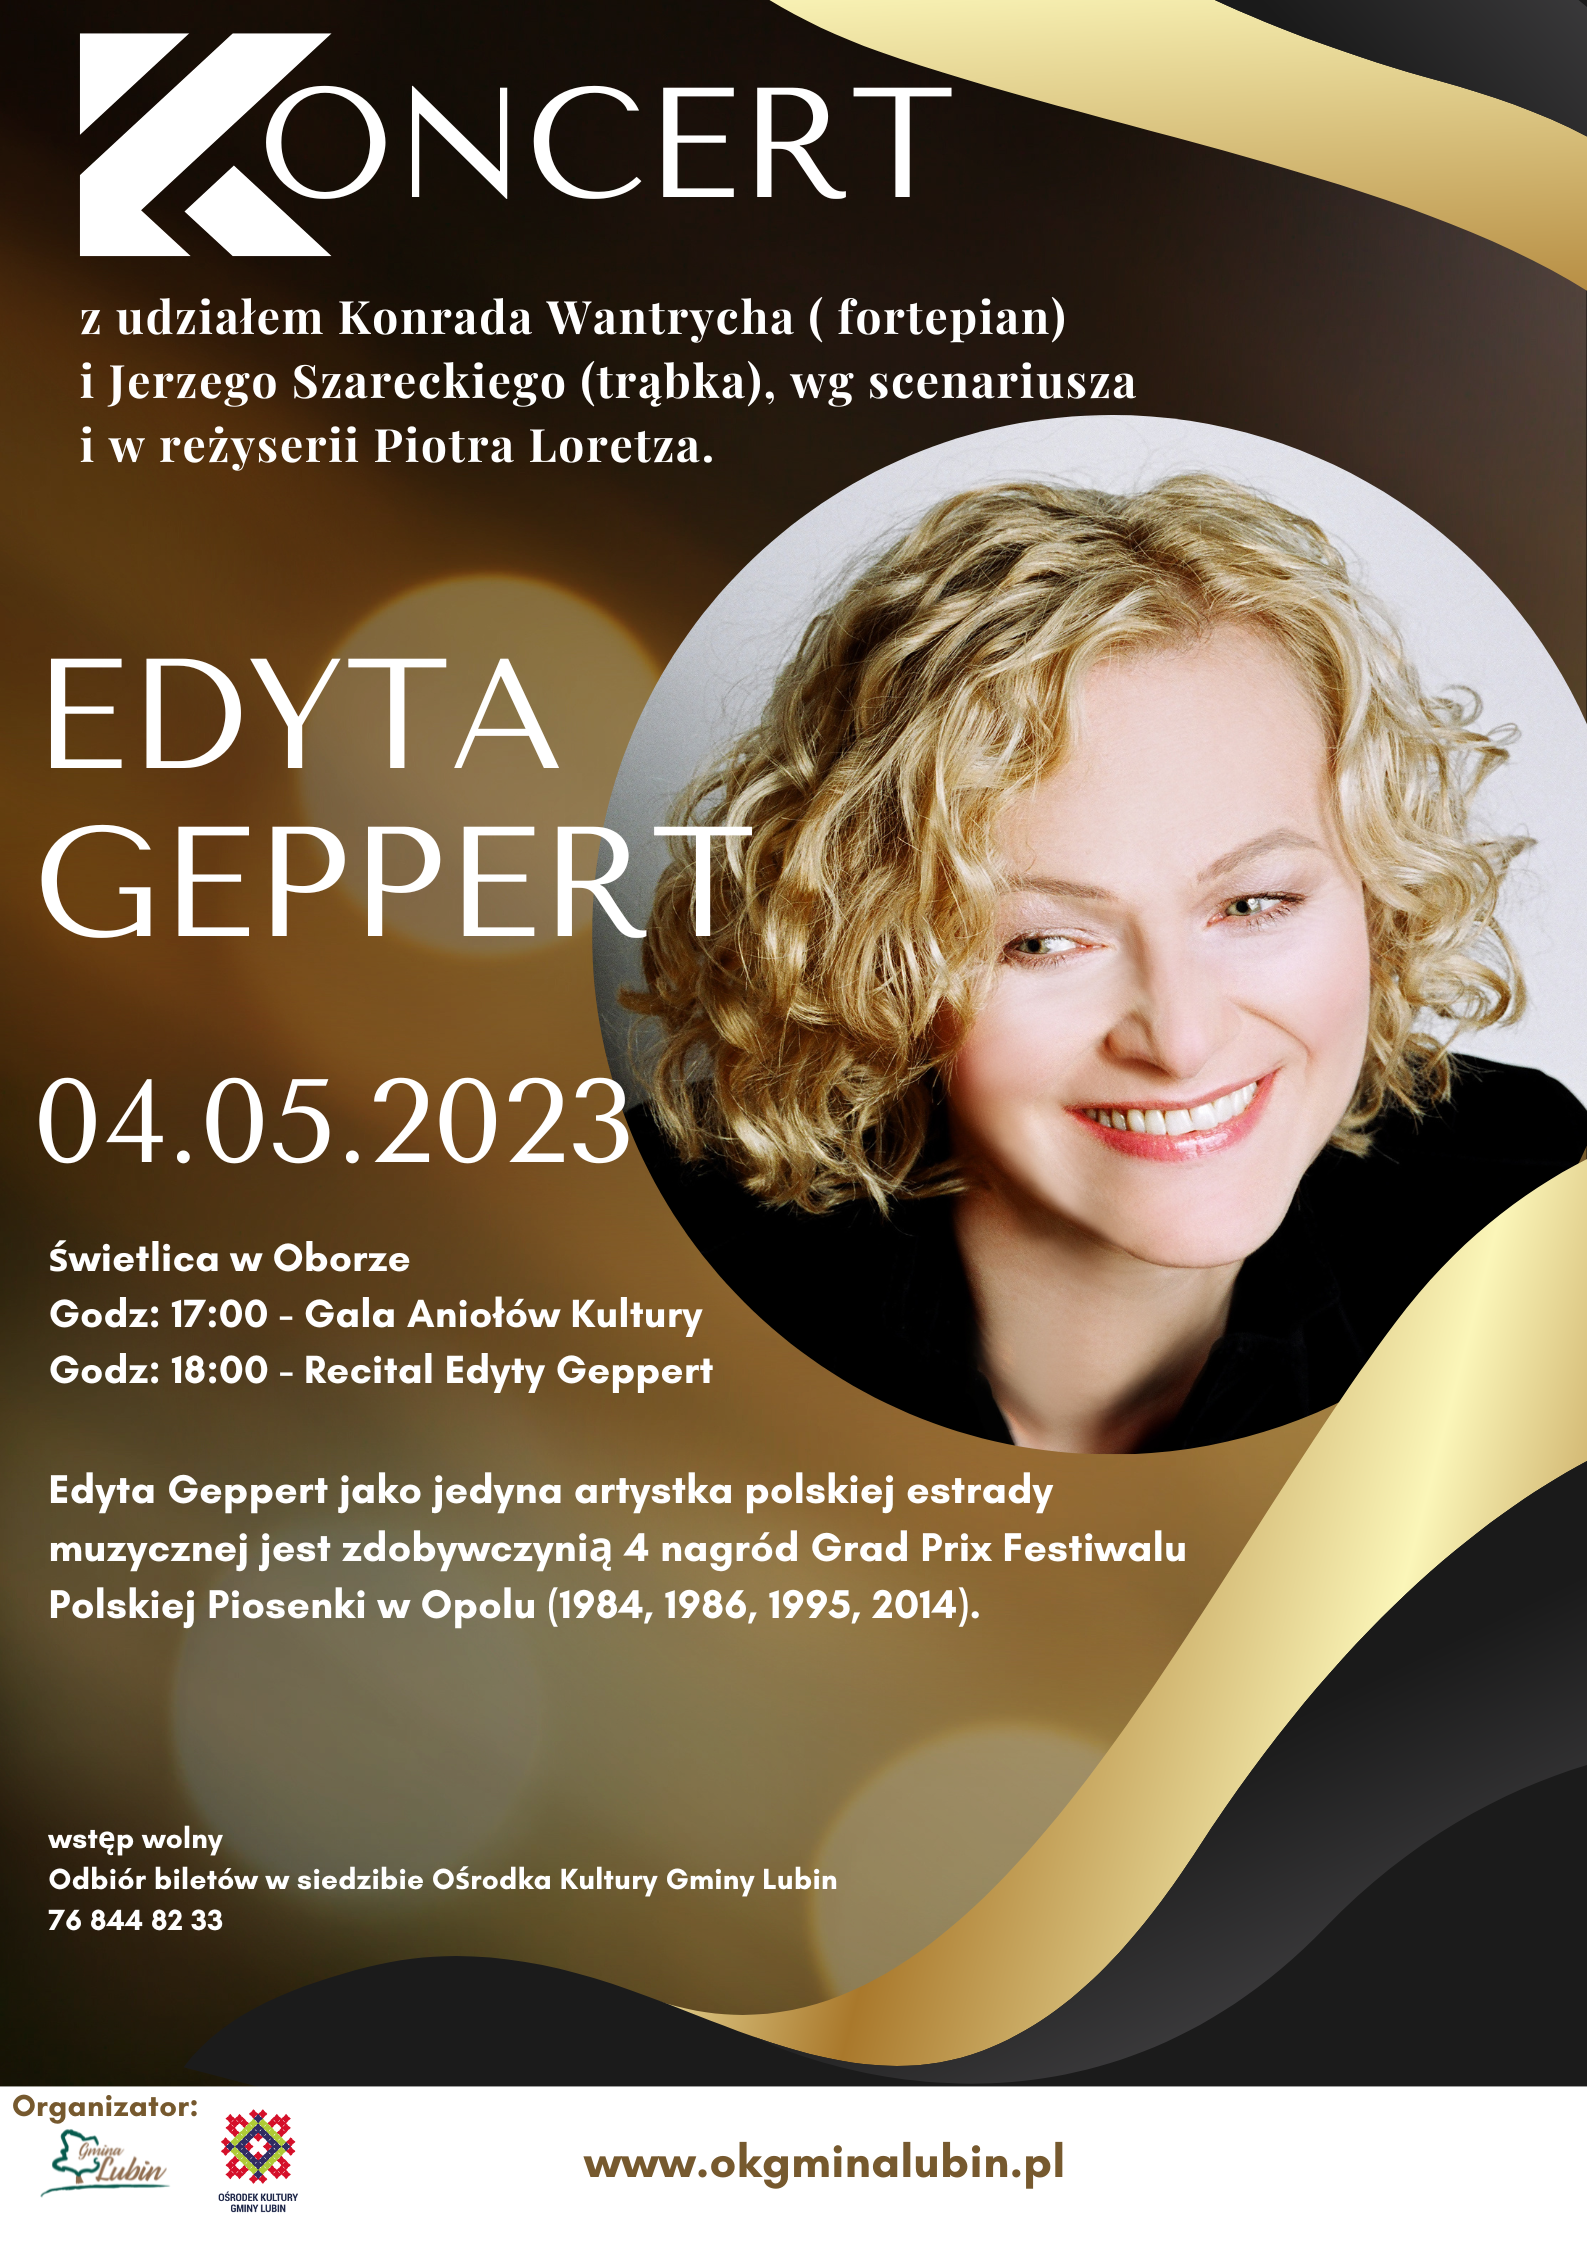 Zapowiedź koncertu Edyty Geppert w gminie Lubin - plakat